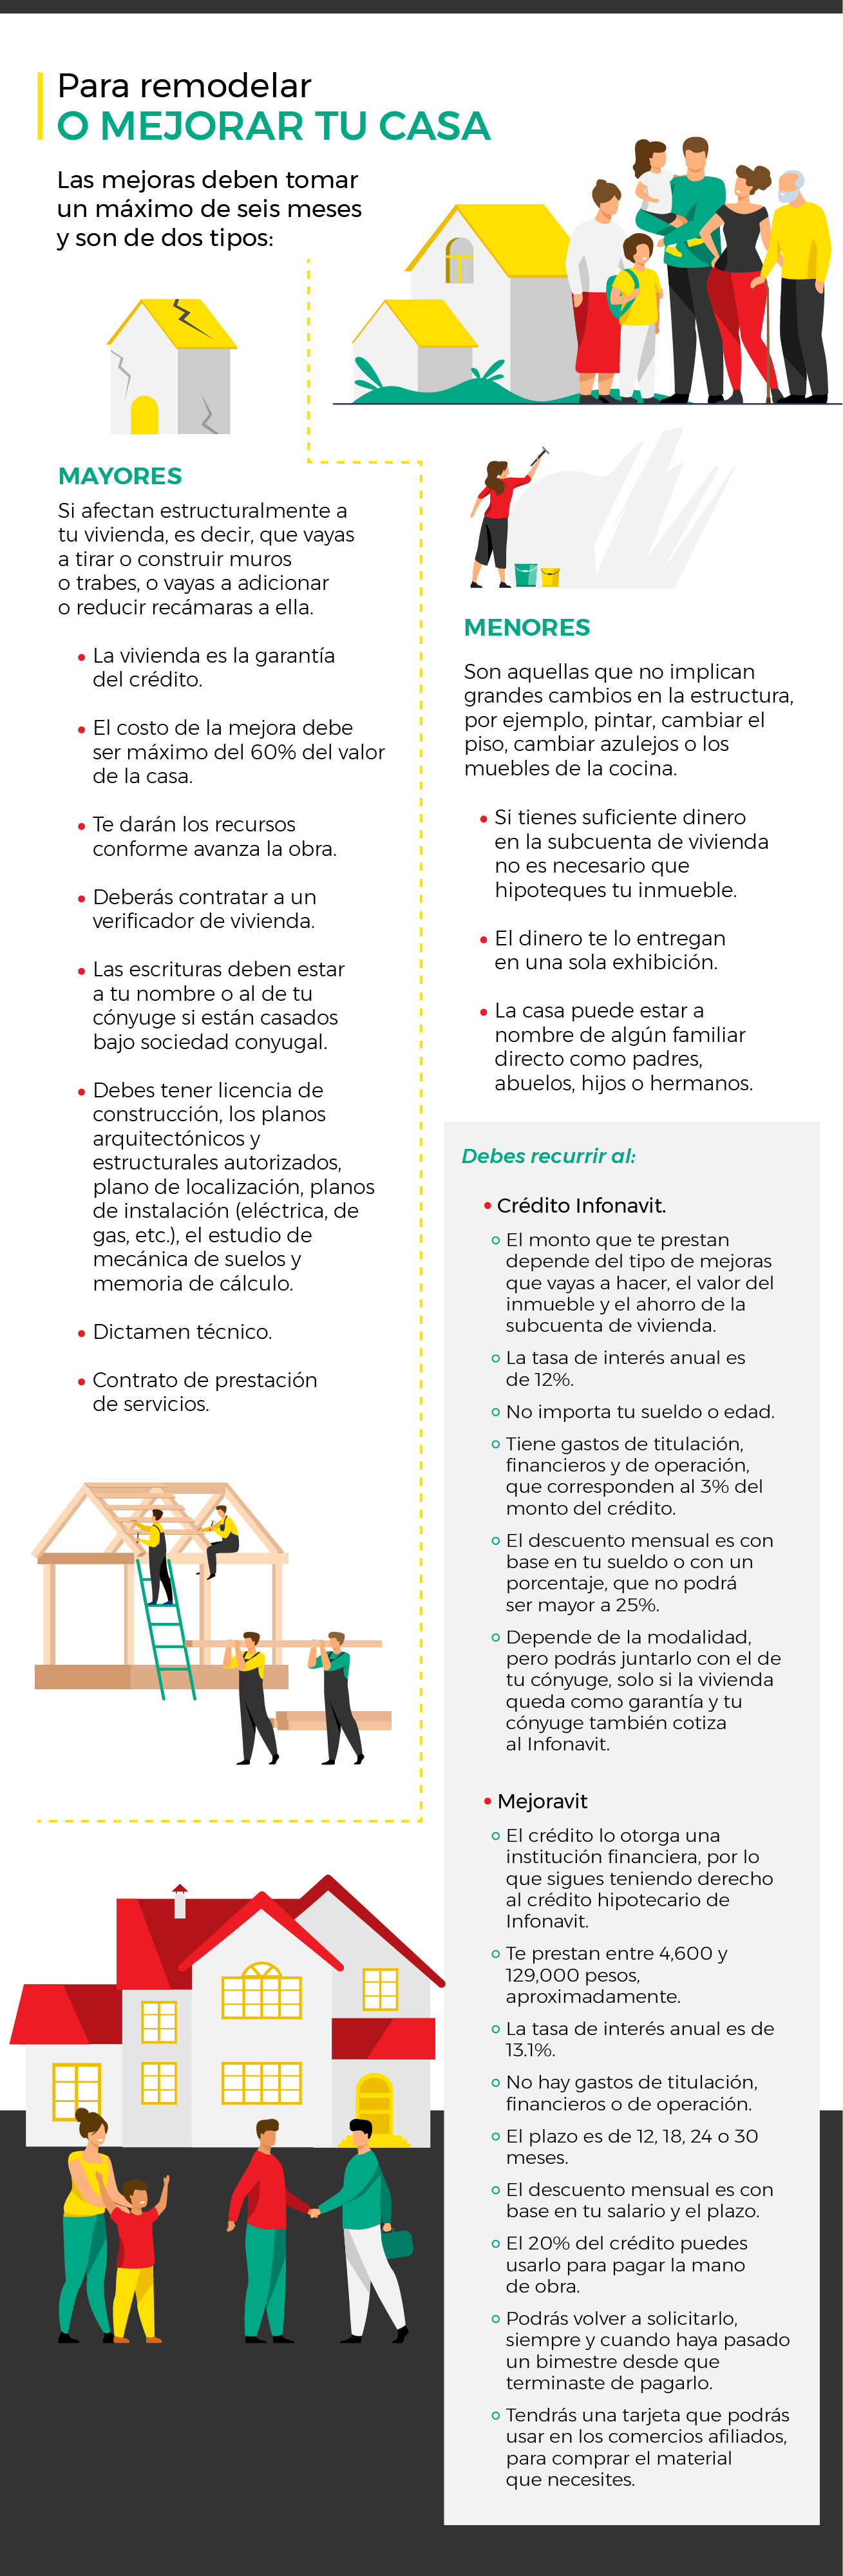 Infografia_Se_puede_usar_la_subcuenta_de_vivienda_para_remodelar_tu_casa